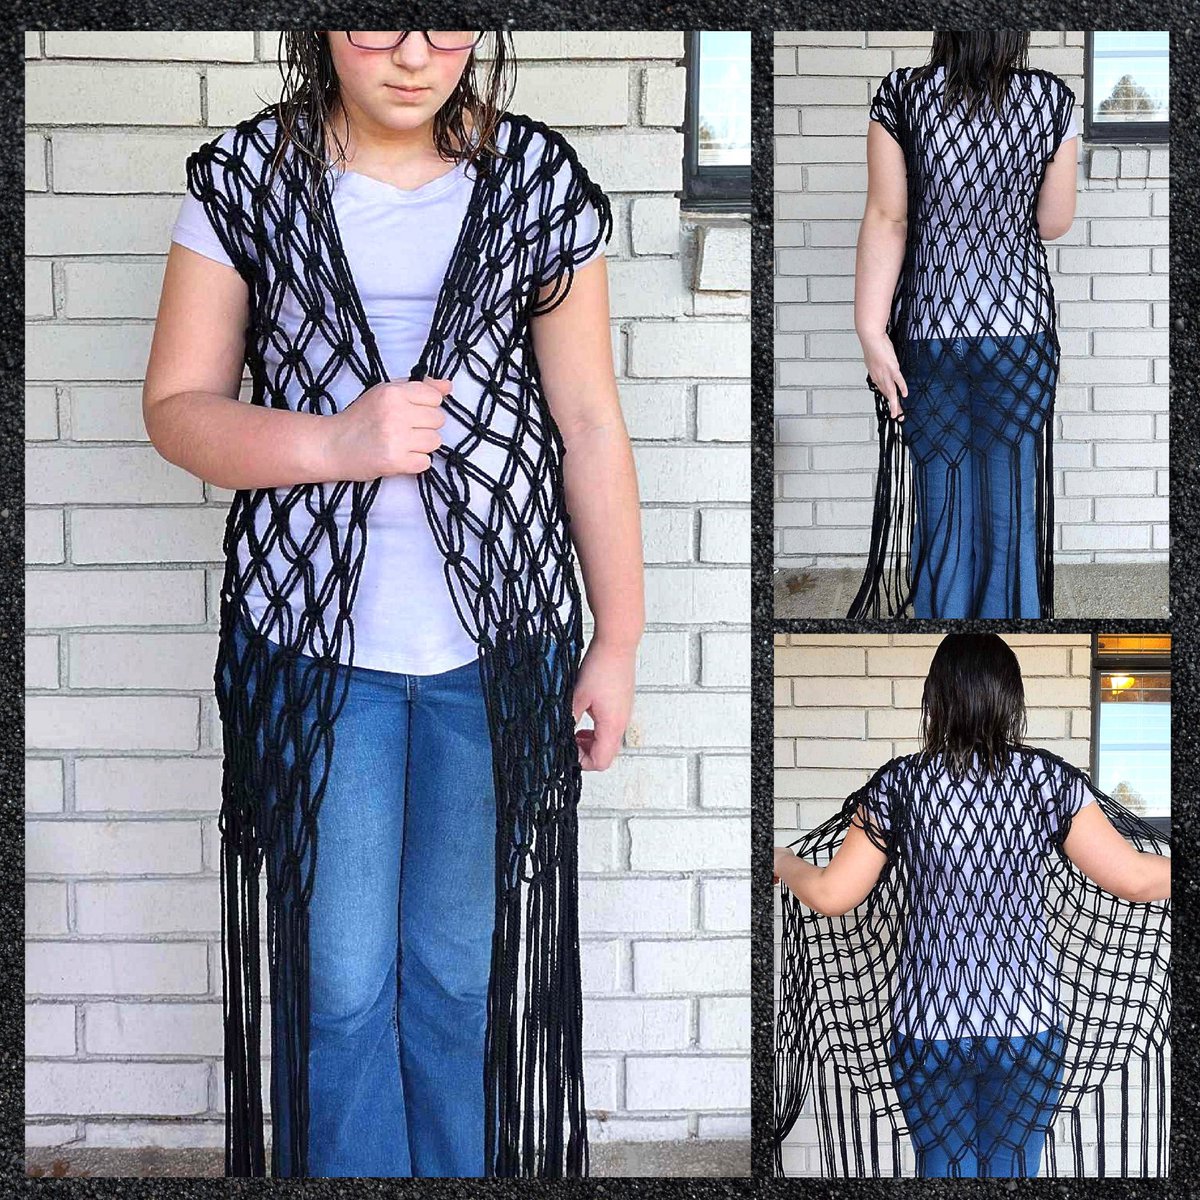 Long black macrame vest FREE shipping in the US wickedcraftworks.etsy.com/listing/168538… @Etsy @EtsySuccess #macrame #fashion #women #Clothing #vest #handmade #Fringe #CraftBizParty #tuesdayvibe #etsyfinds